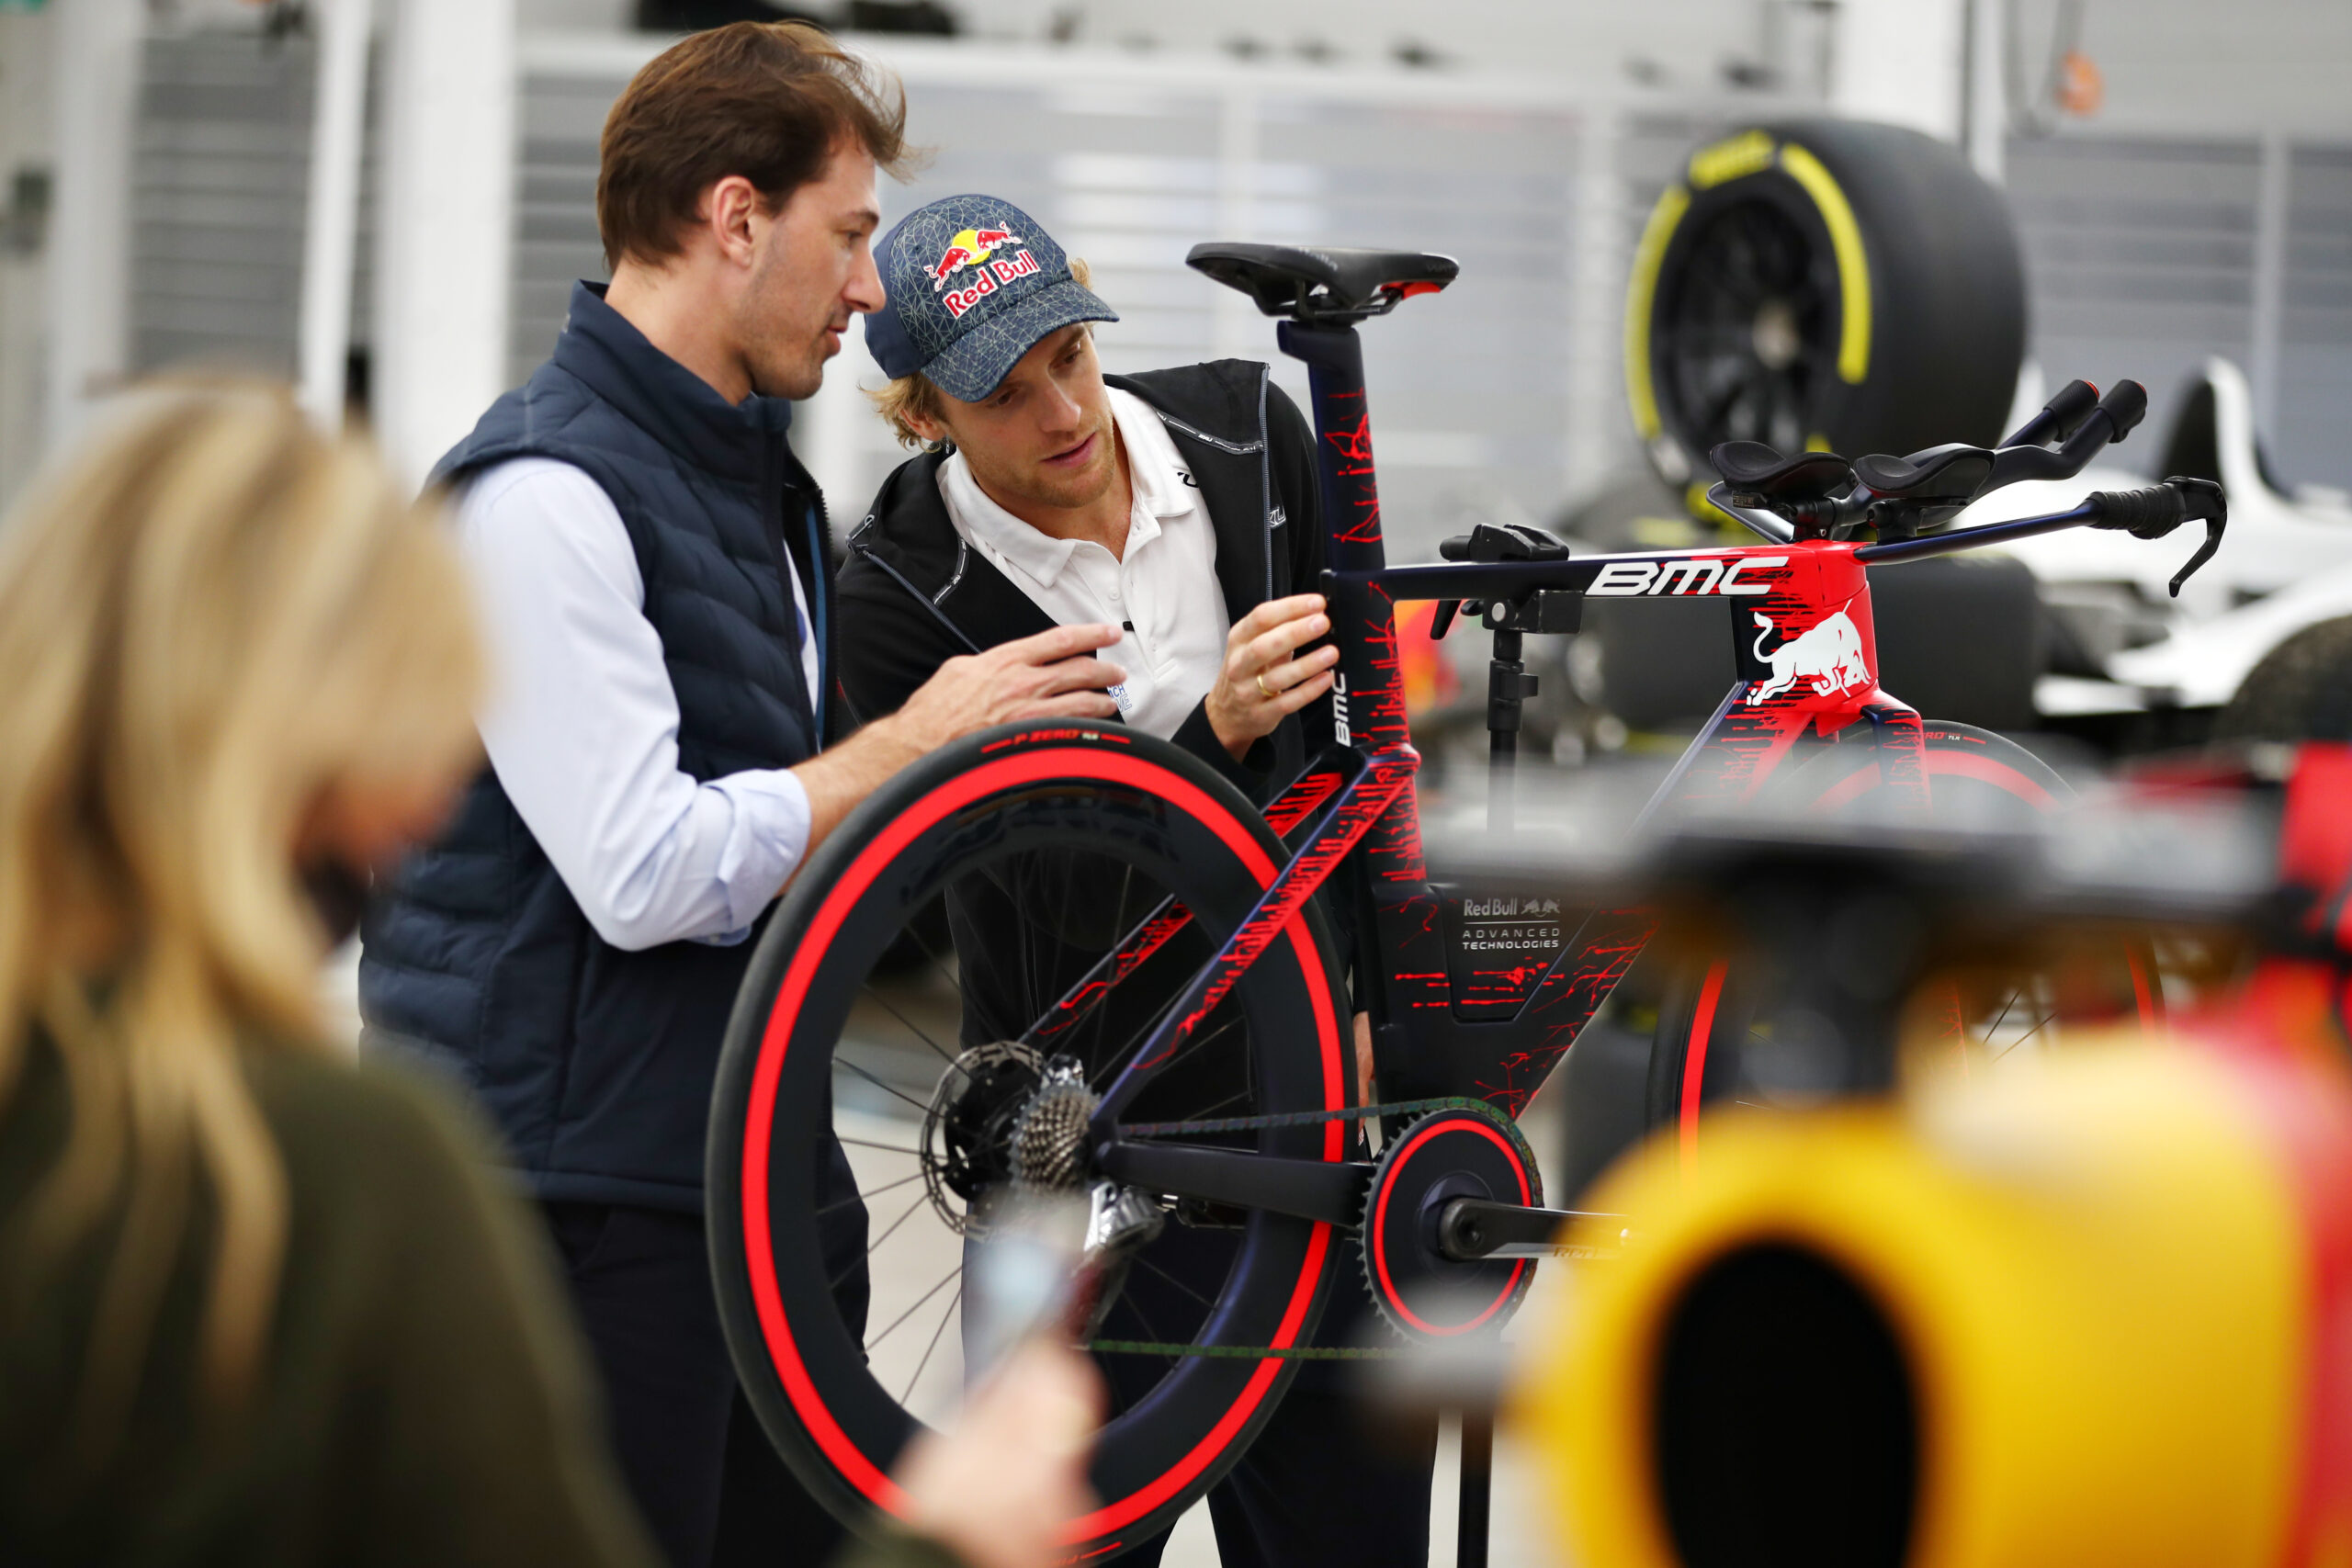 F1 - Quand Red Bull et BMC développent le vélo le plus rapide au monde